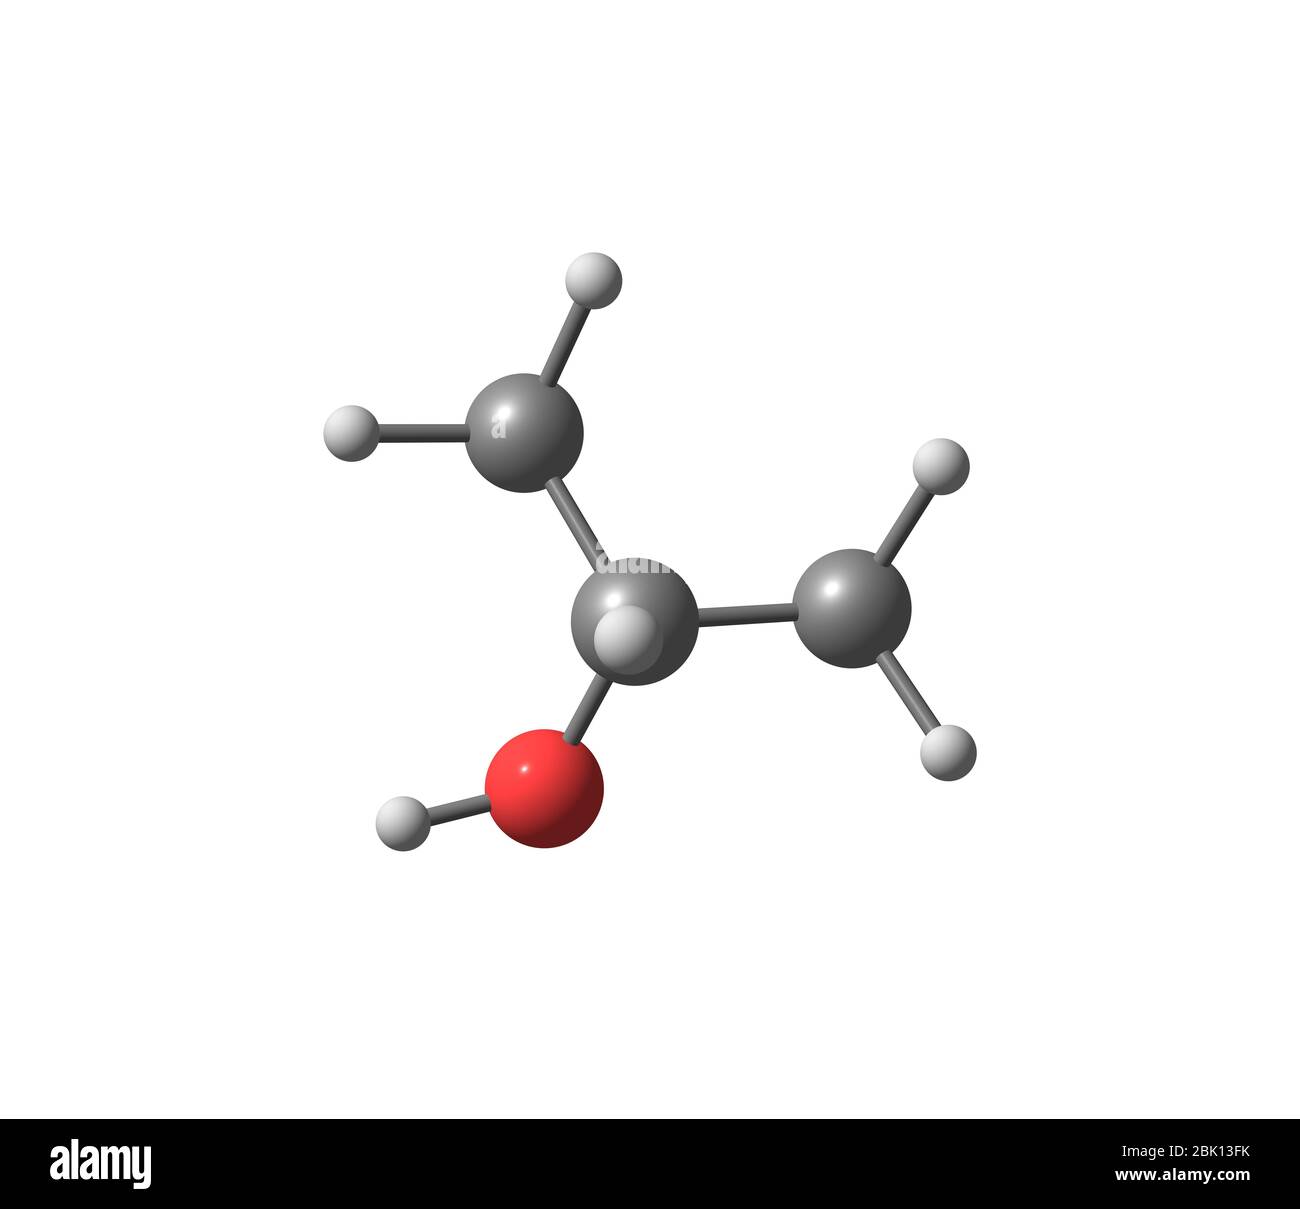 L'alcol isopropilico (isopropanolo) è un composto chimico di formula  molecolare C3H8O. Si tratta di un composto chimico incolore, infiammabile,  con un forte Foto stock - Alamy